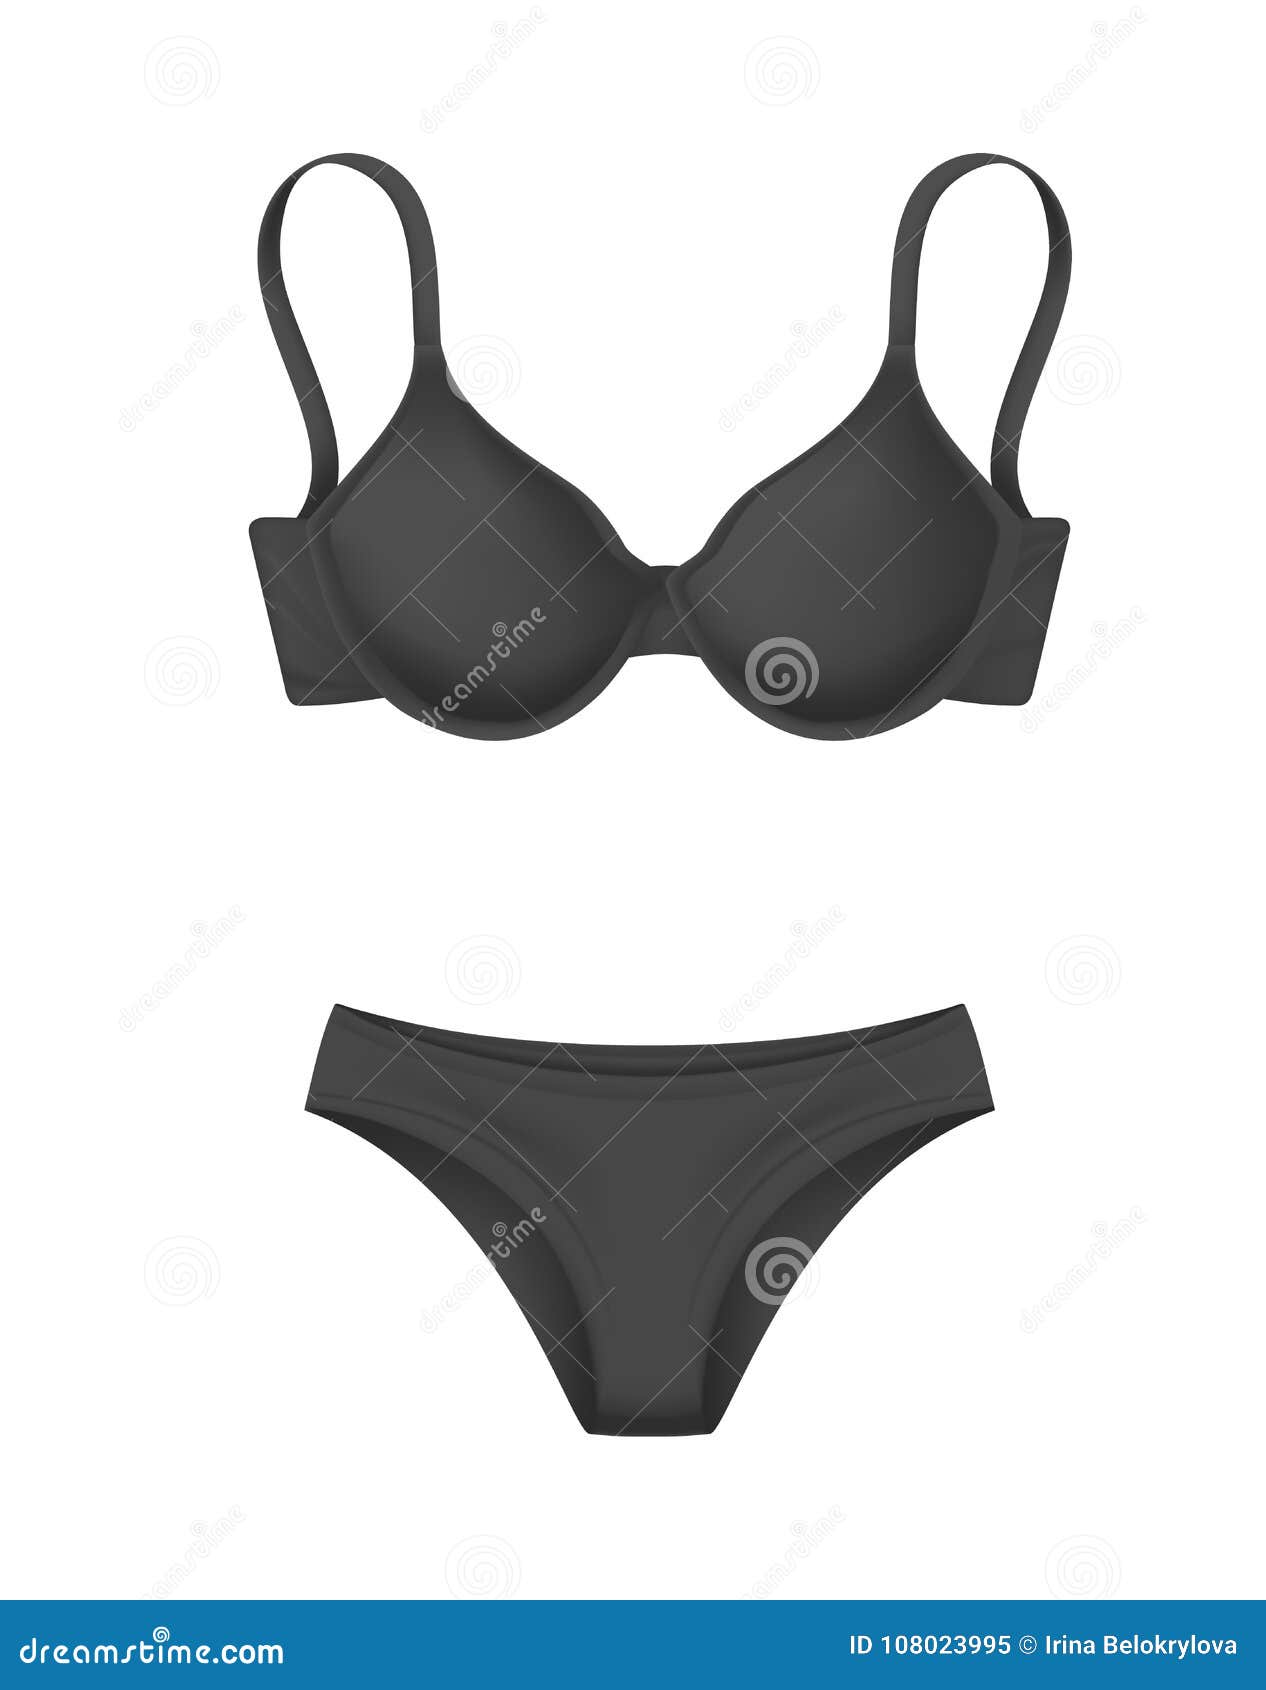 Download Vector Realistic Black Bra Panties Template Mockup Stock ...